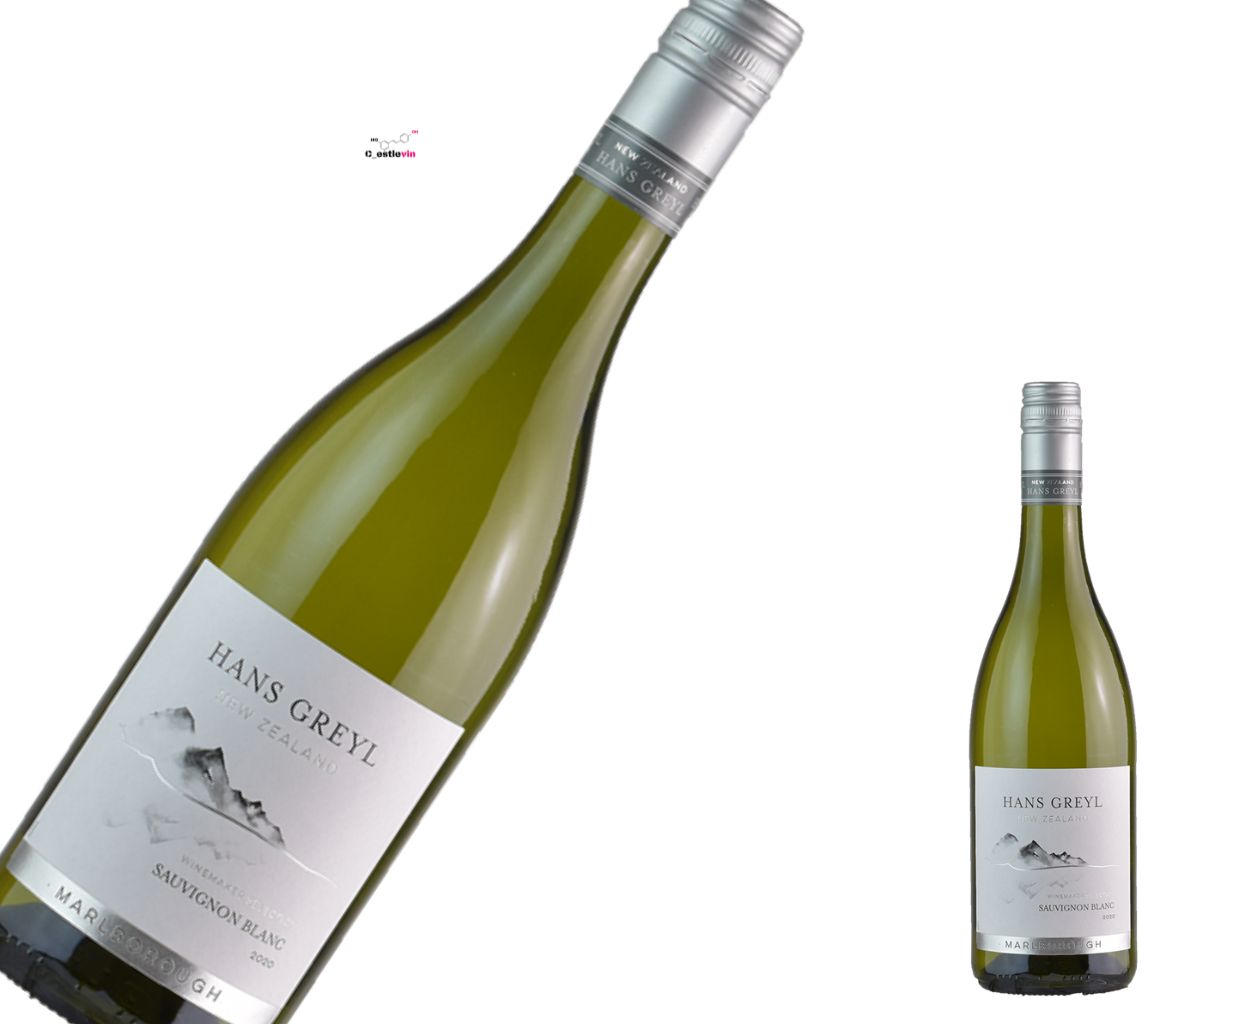 Hans Greyl Sauvignon Blanc - Najpopularniejsze Białe Wino z Biedronki?